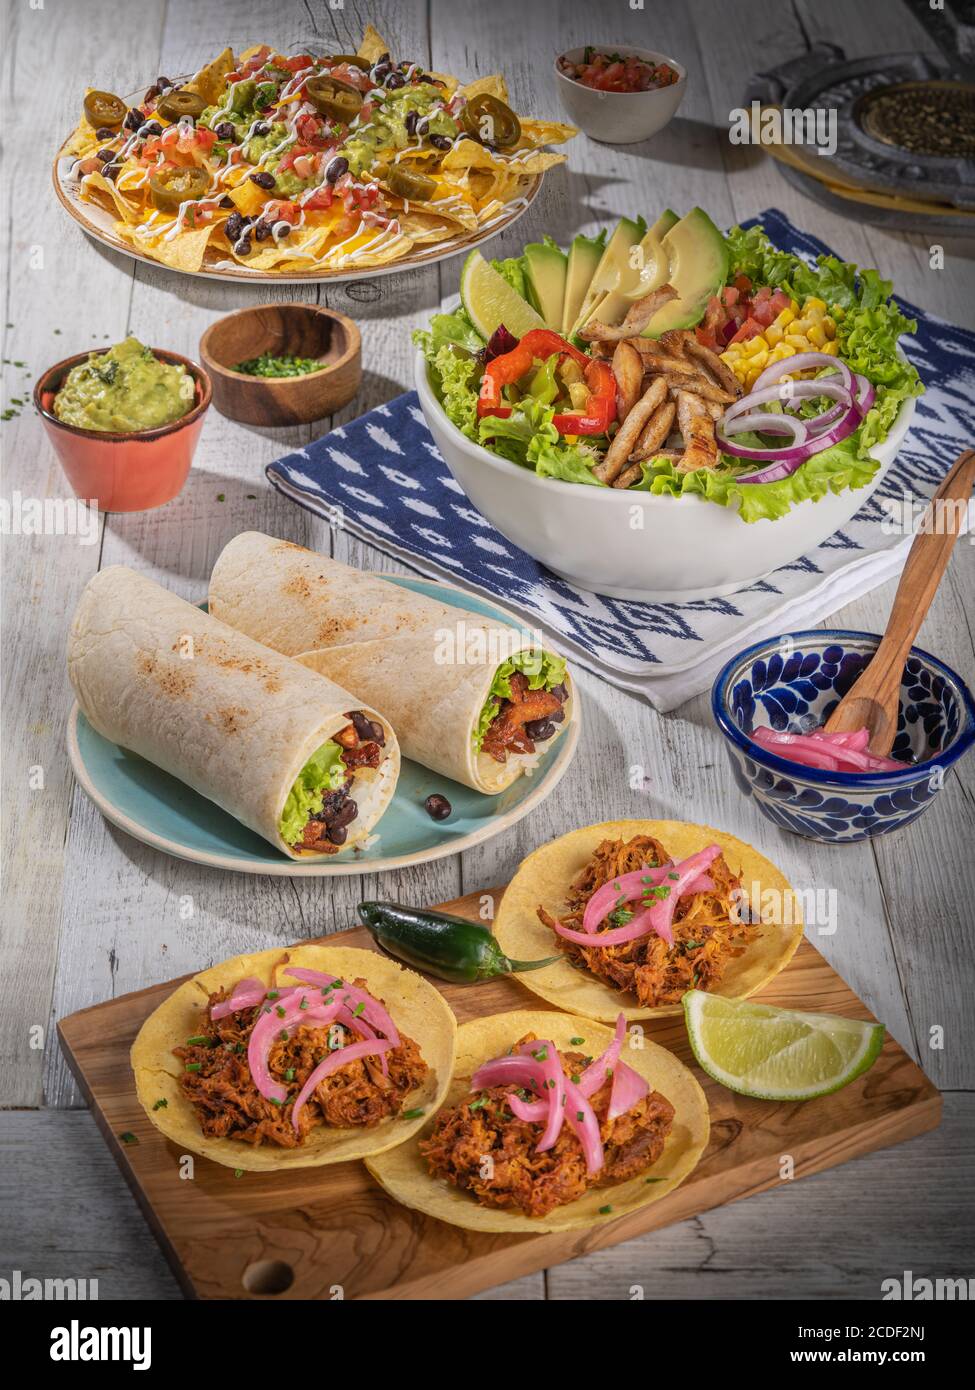 Köstliches Bankett mit traditioneller mexikanischer Küche, lateinamerikanischer Küche, würzigen Tacos Burritos, Fast Street Food Stockfoto